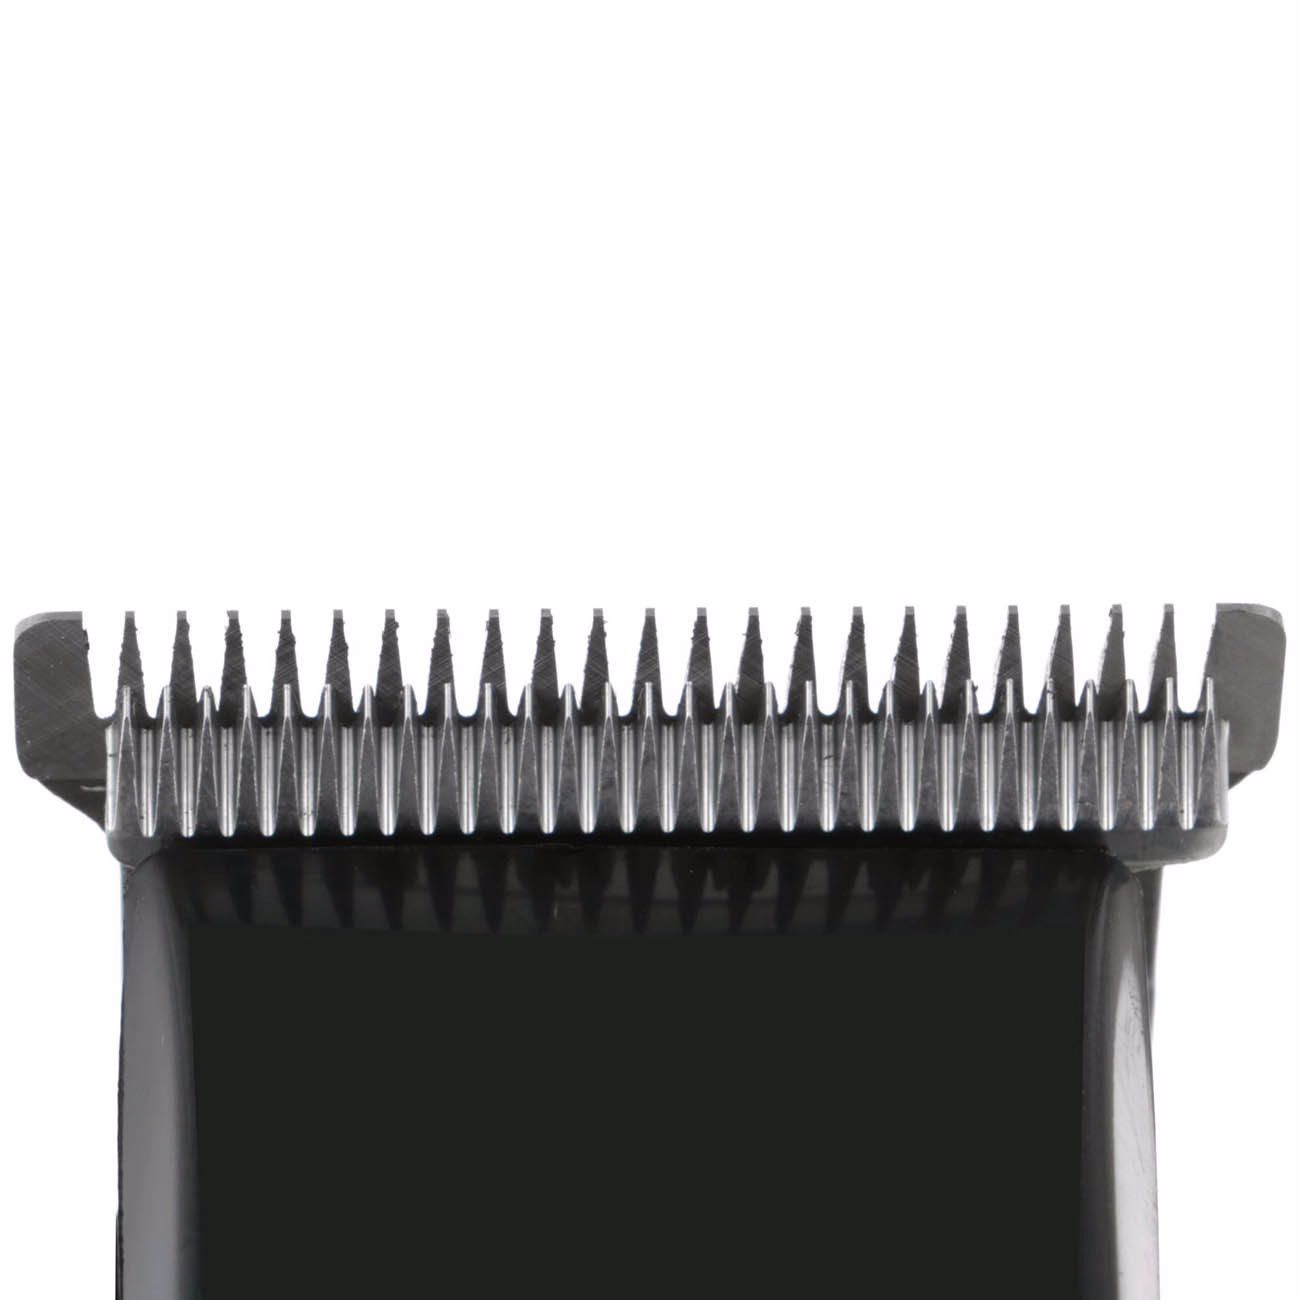 Машинка для стрижки волос Wahl Baldfader Clipper - handle case 79111-516 - 4